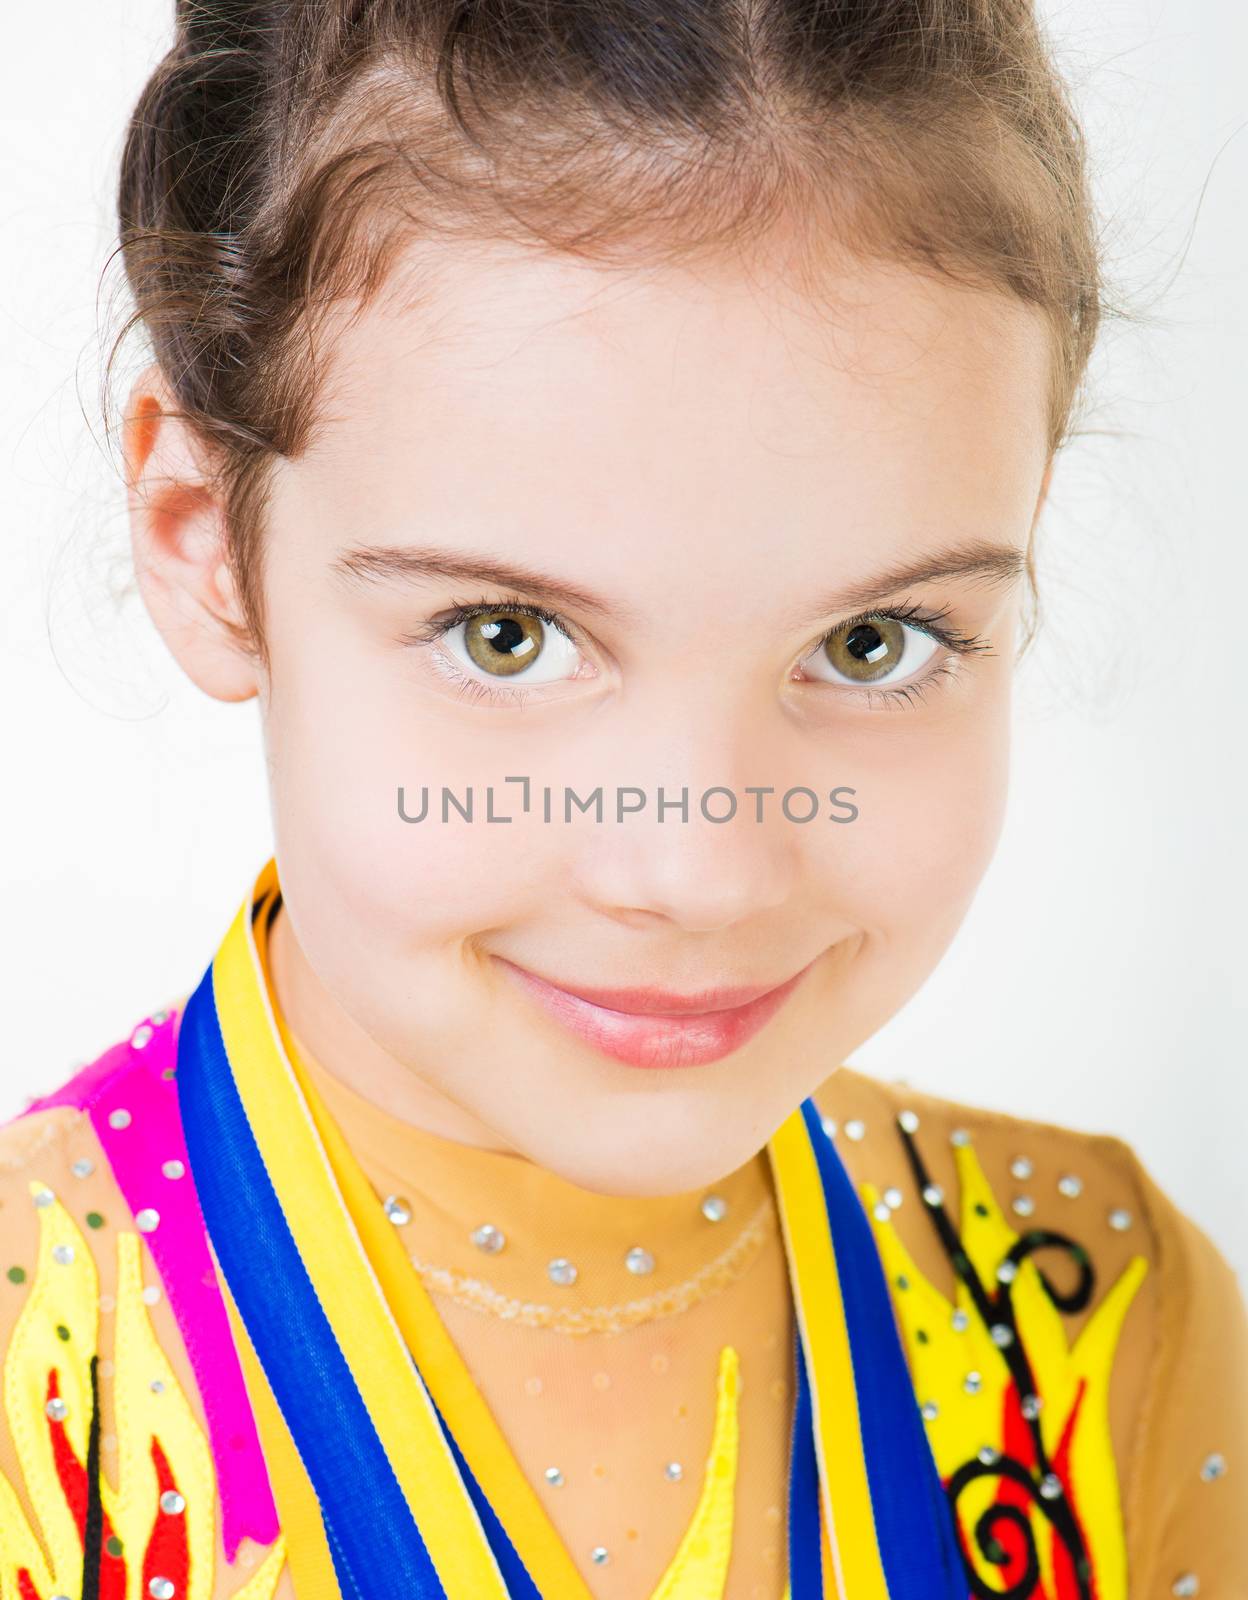 little girl gymnast by GekaSkr